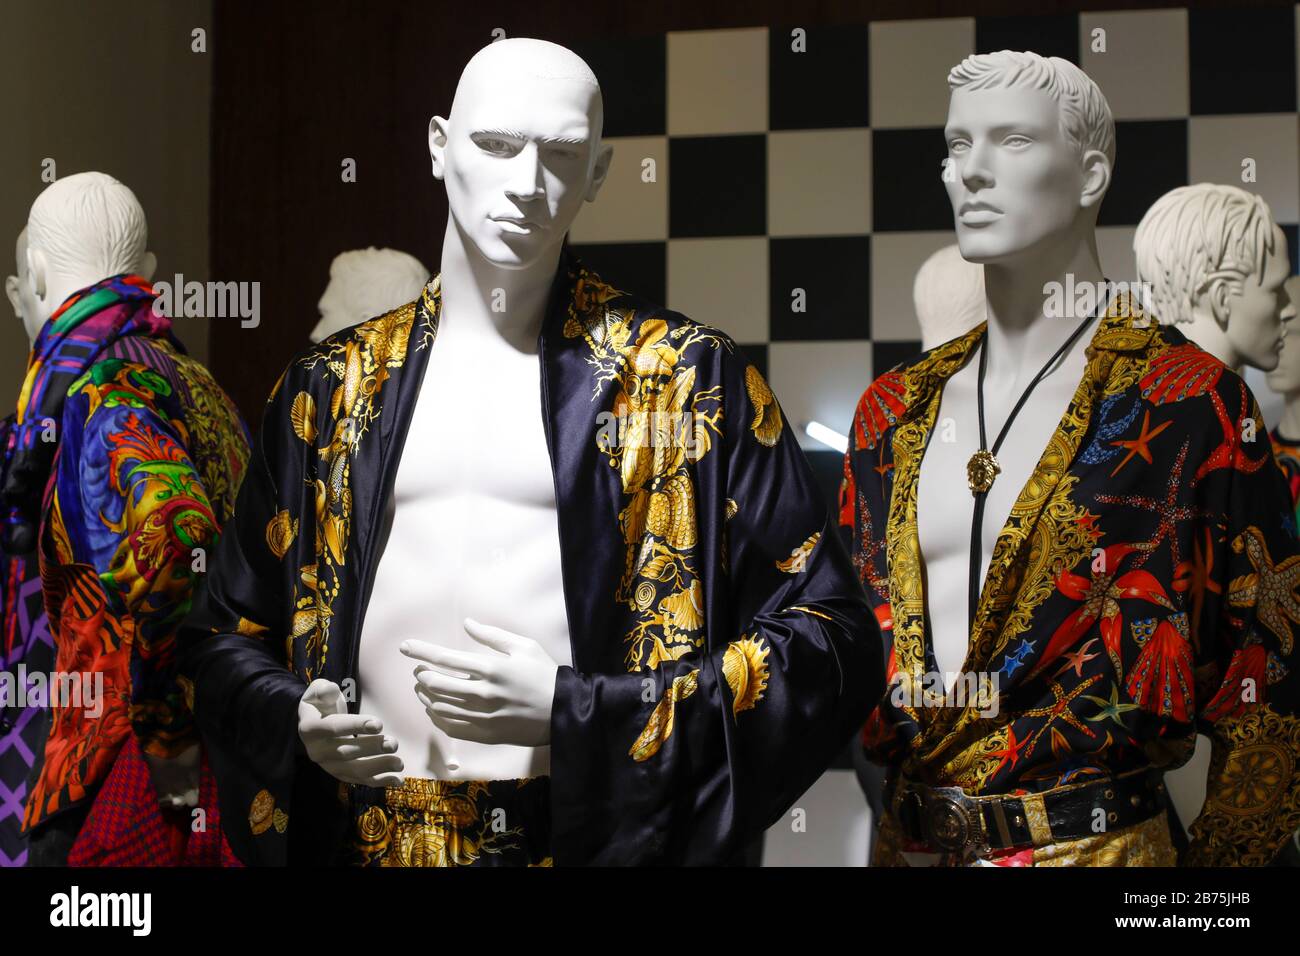 Blick auf die Retrospektive Gianni Versace in Berlin, 05.02.2018. Versace  stellte 1994 zum ersten Mal in Berlin aus. Drei Jahre später wurde er in  Florida ermordet. 20 Jahre nach seinem Tod soll